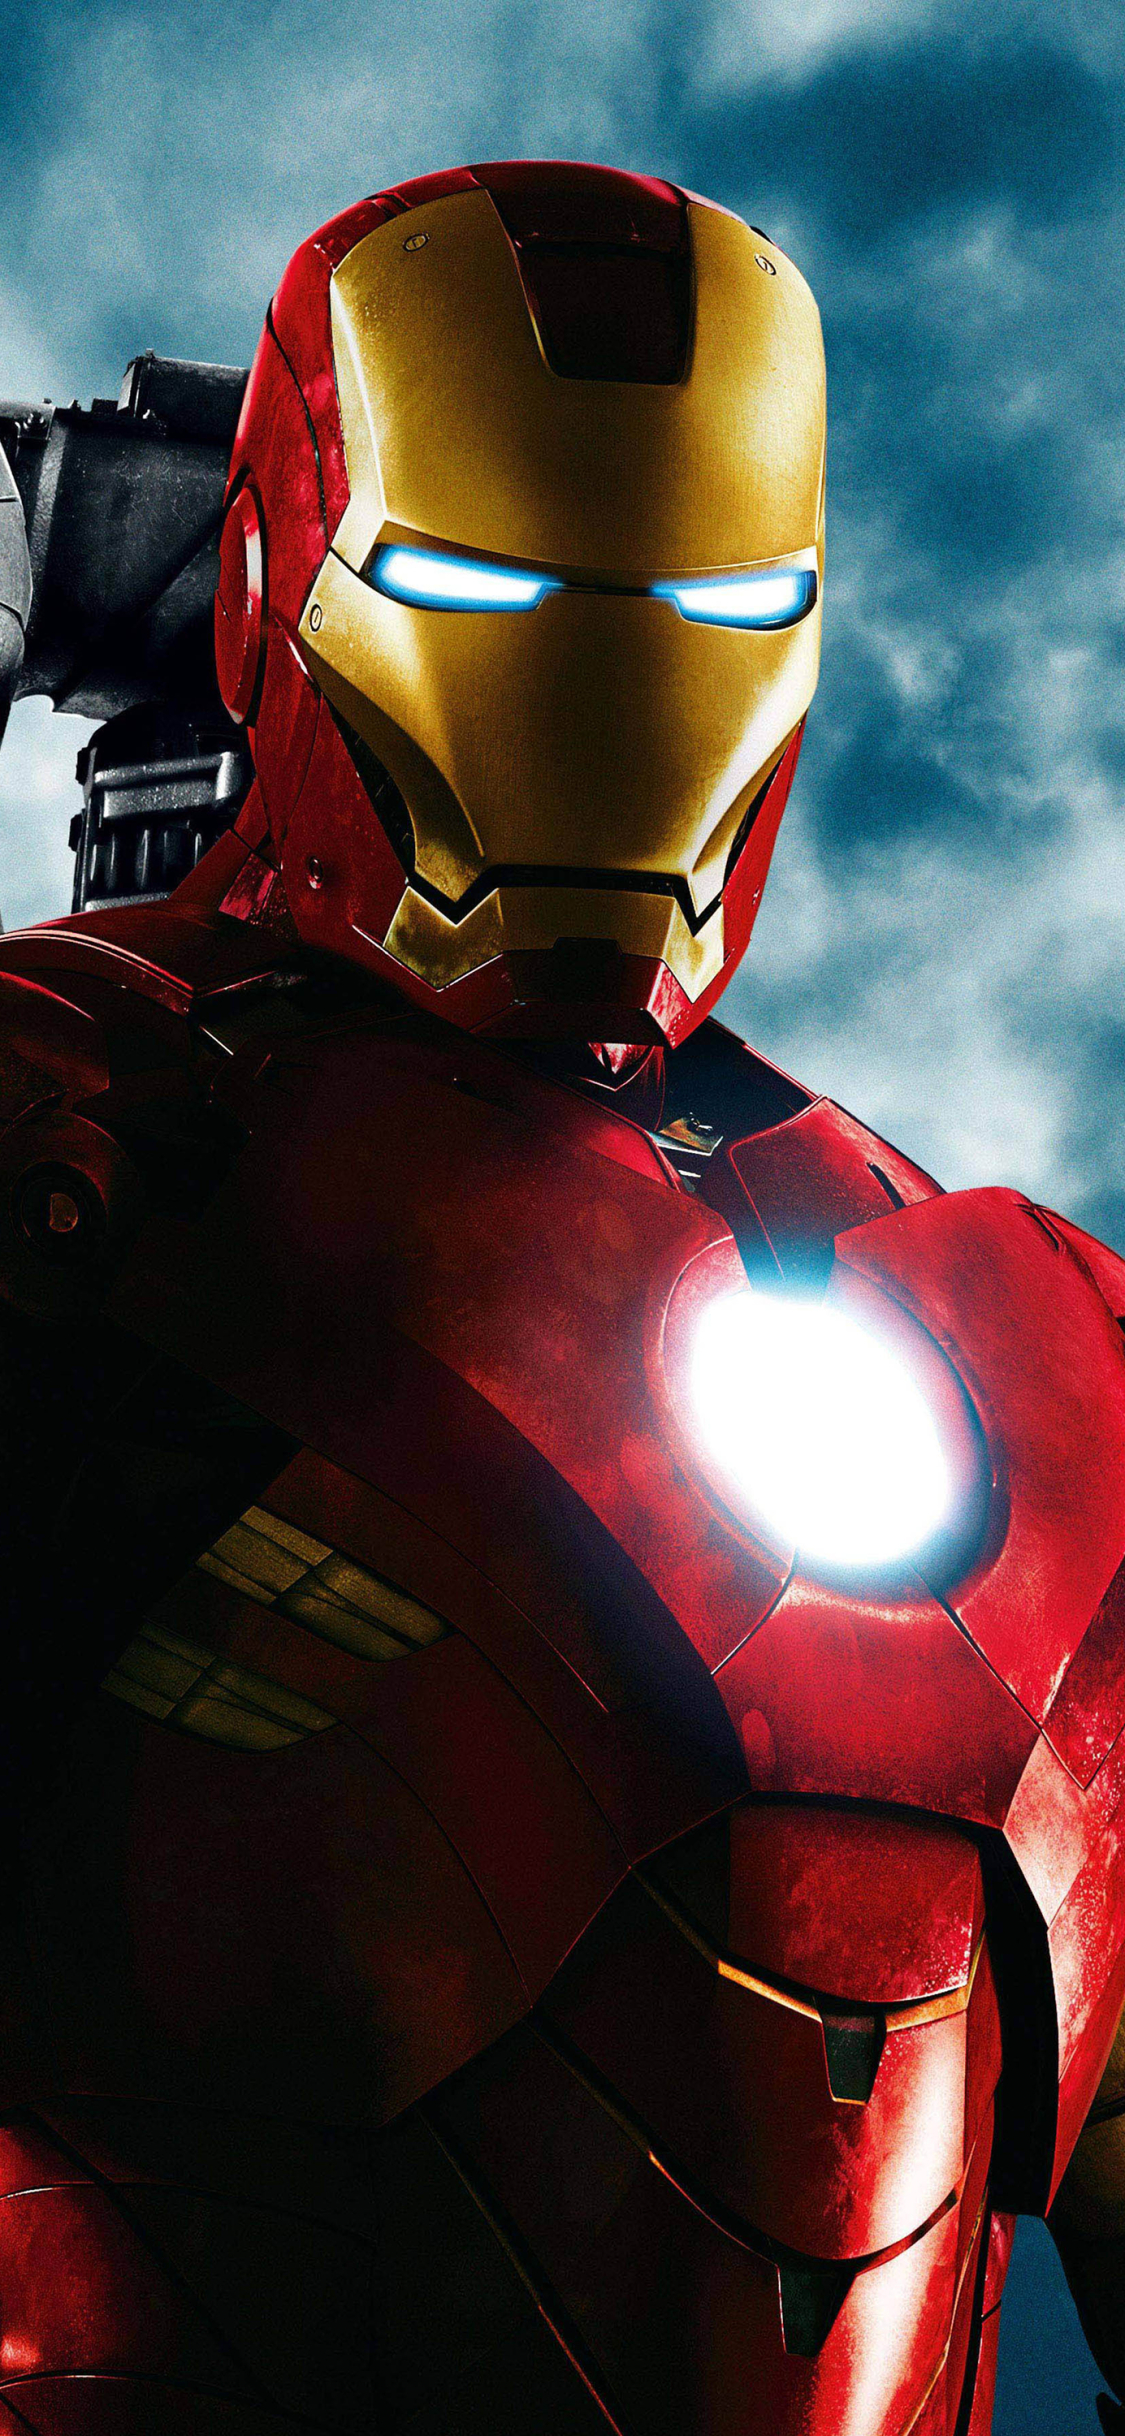 Descarga gratuita de fondo de pantalla para móvil de Iron Man, Películas, Hombre De Acero, Superhéroe, Tony Stark, Iron Man 2.